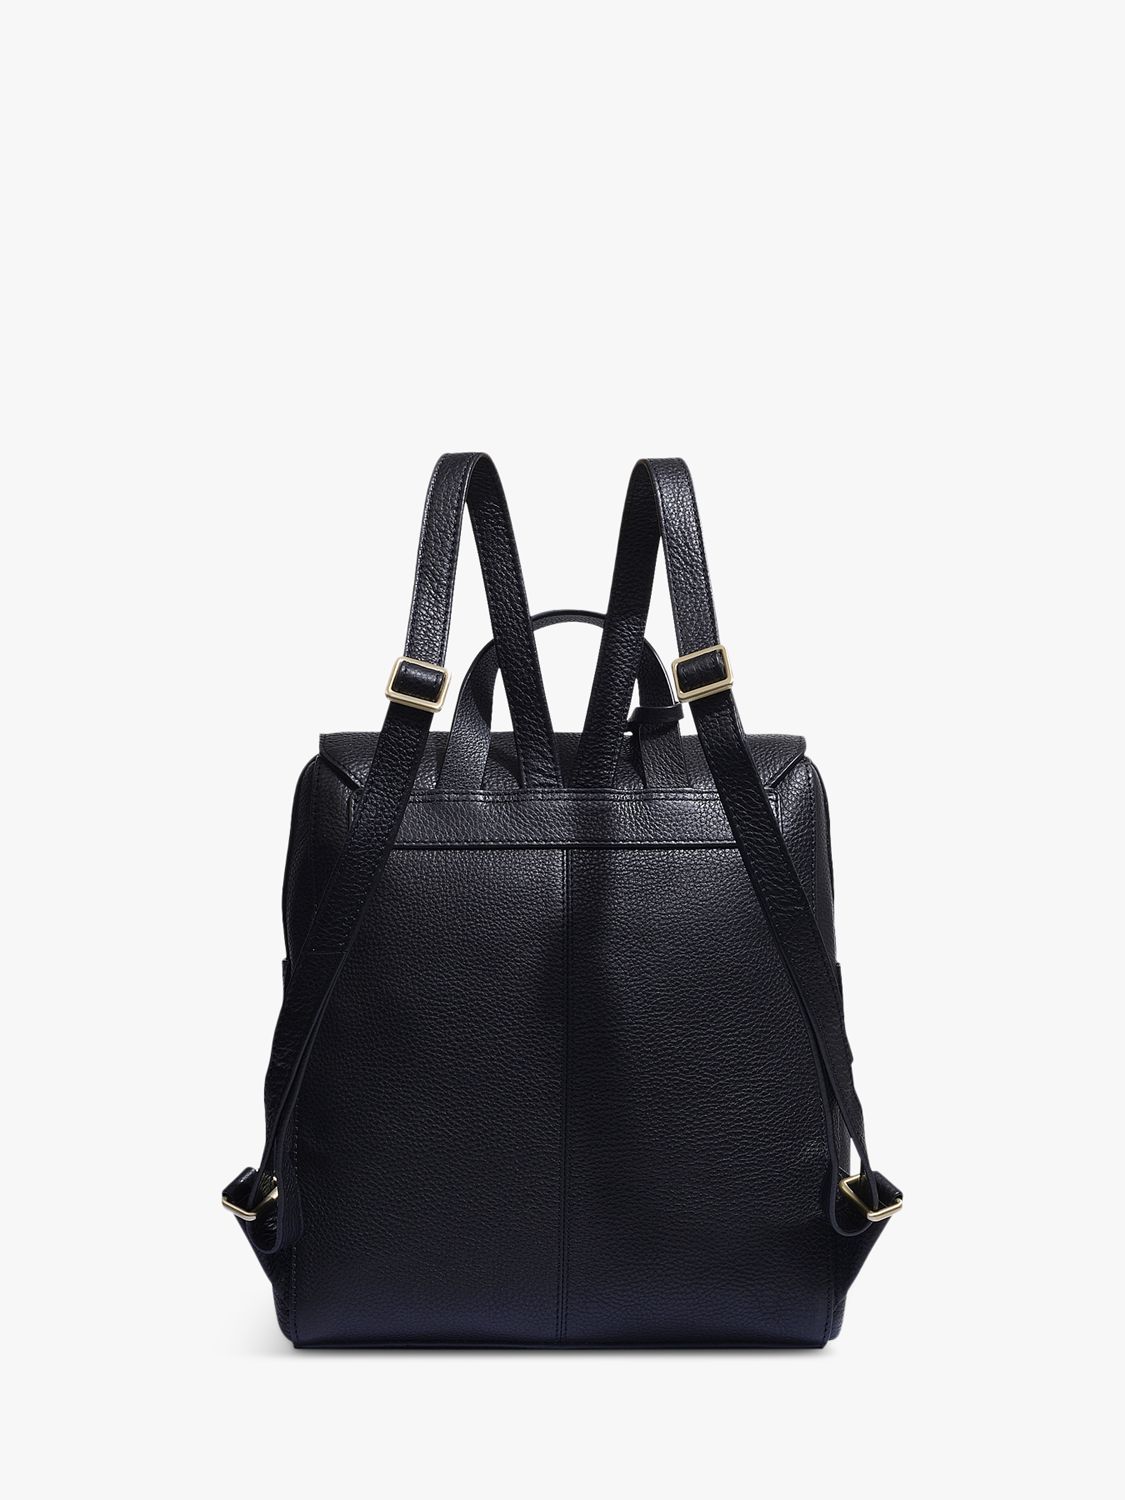 Buy Radley Lorne Close Large Leather Backpack Online at johnlewis.com